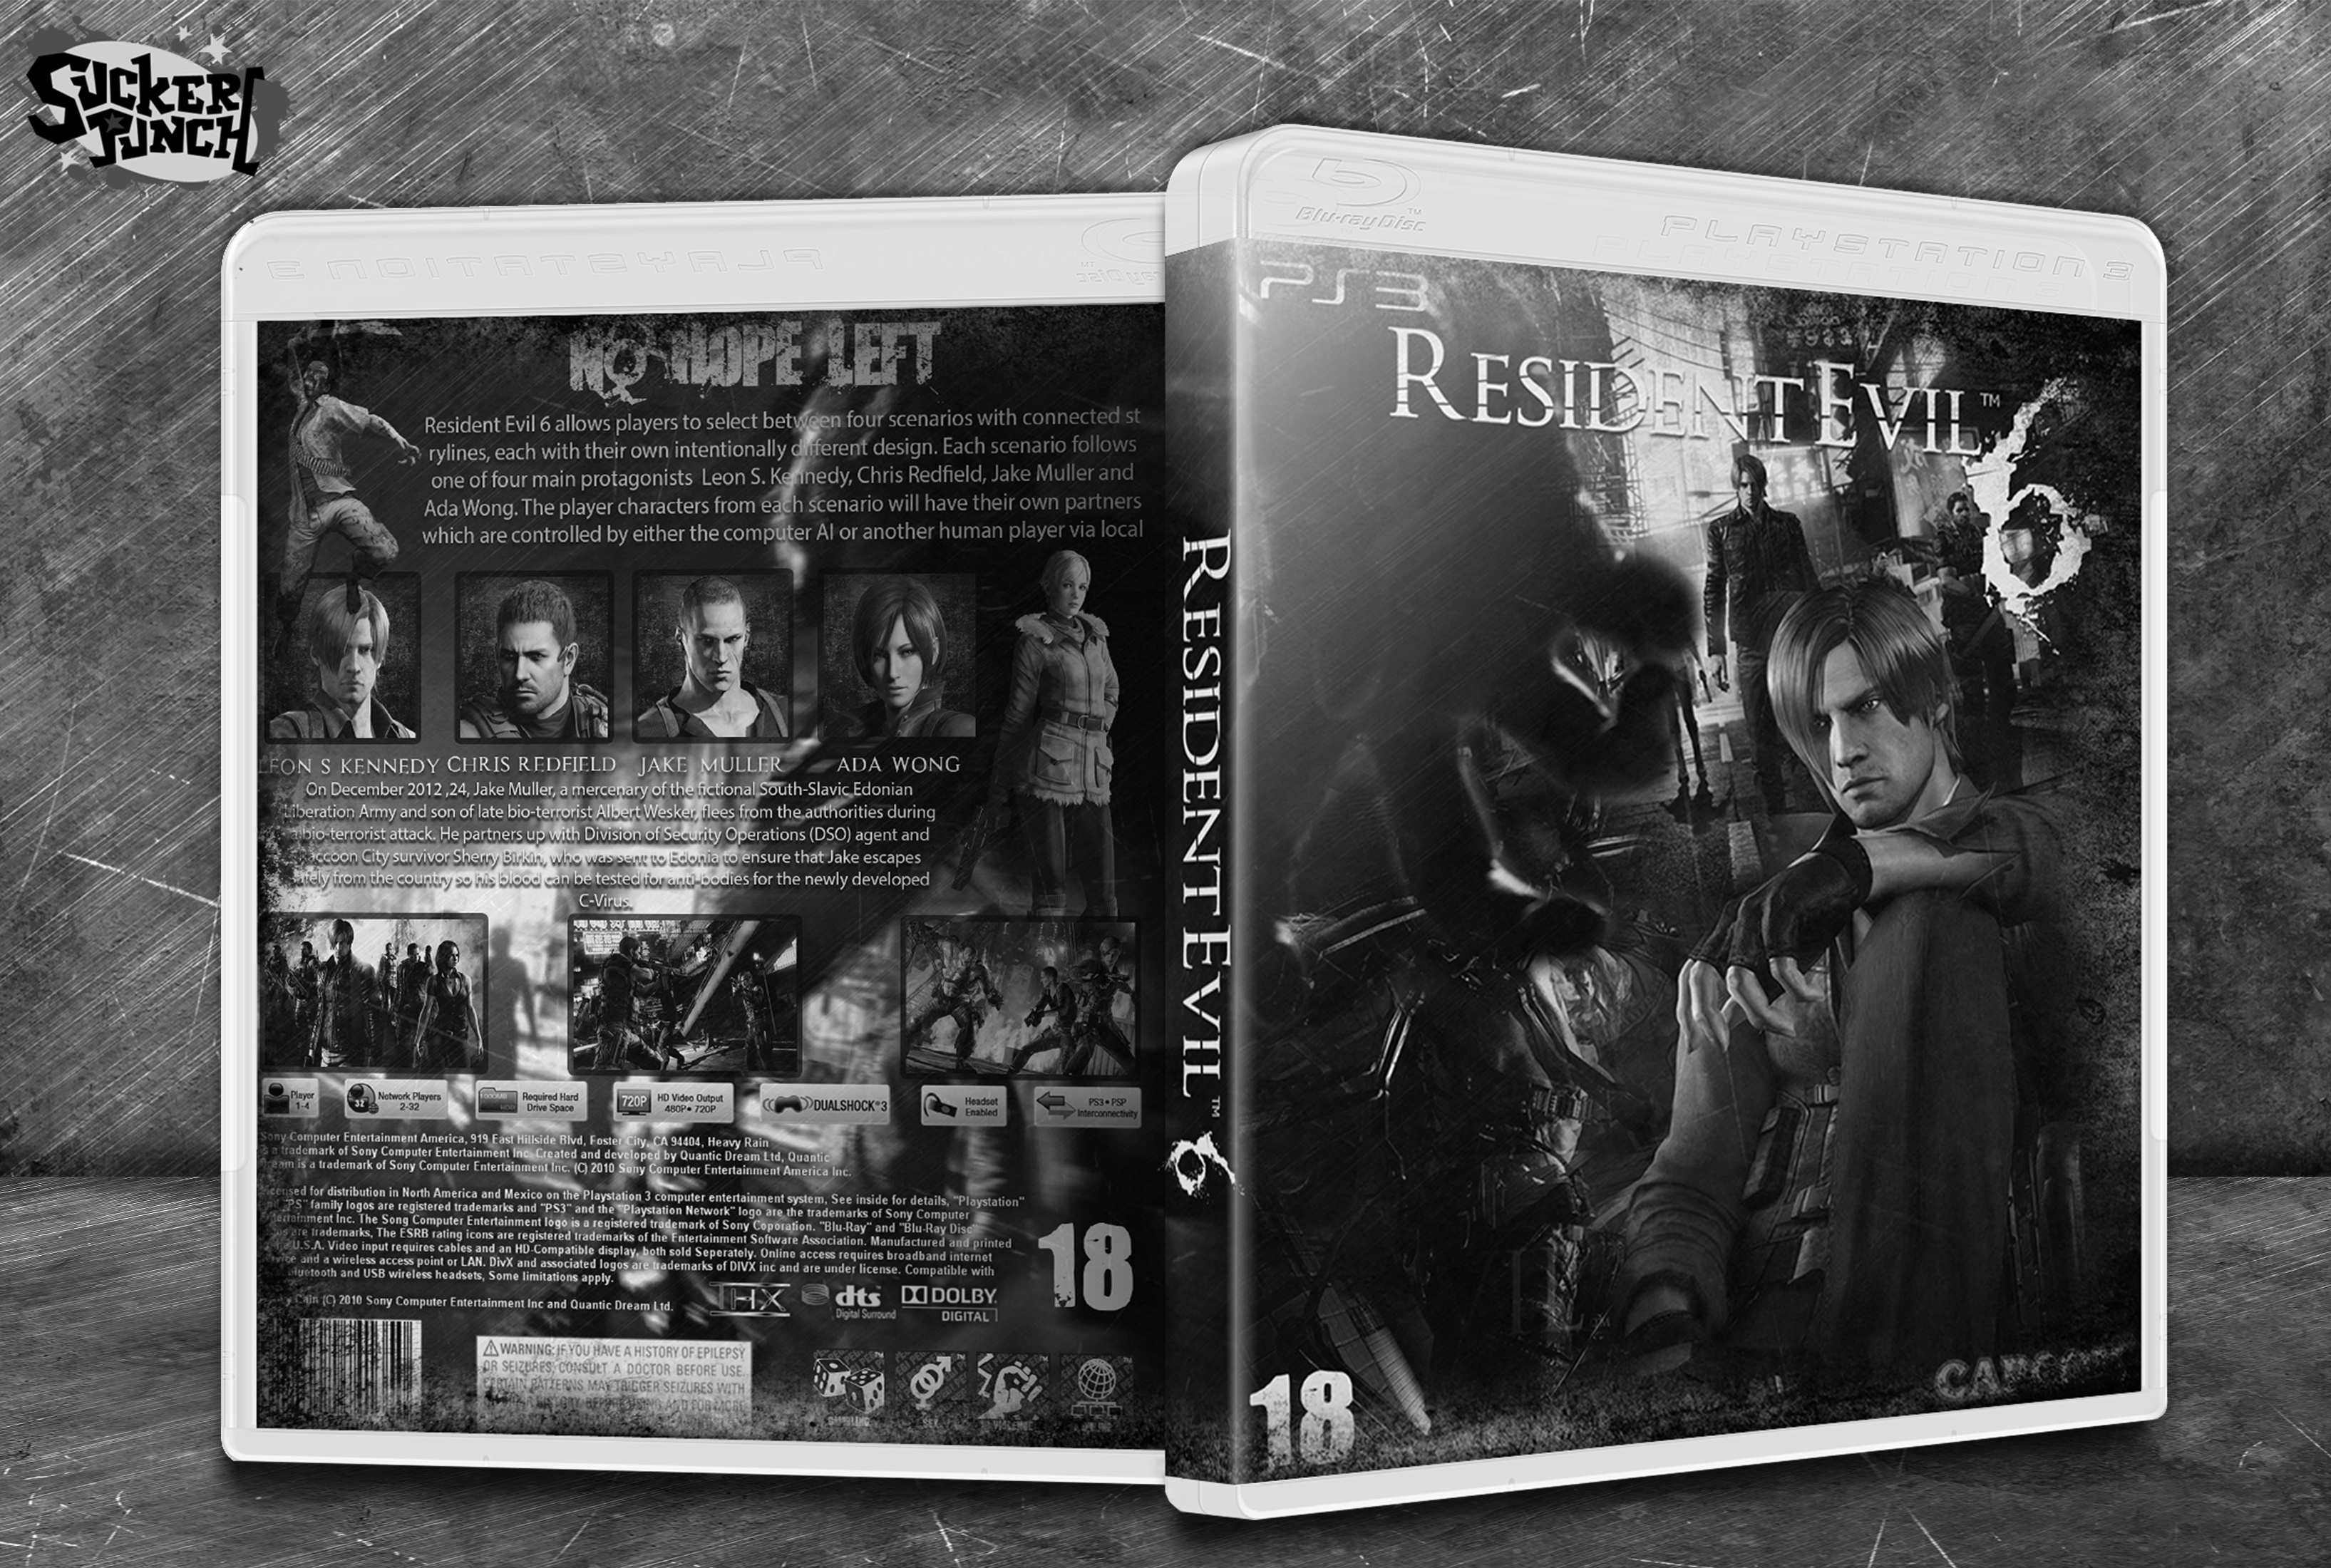 Resident Evil 6 box cover